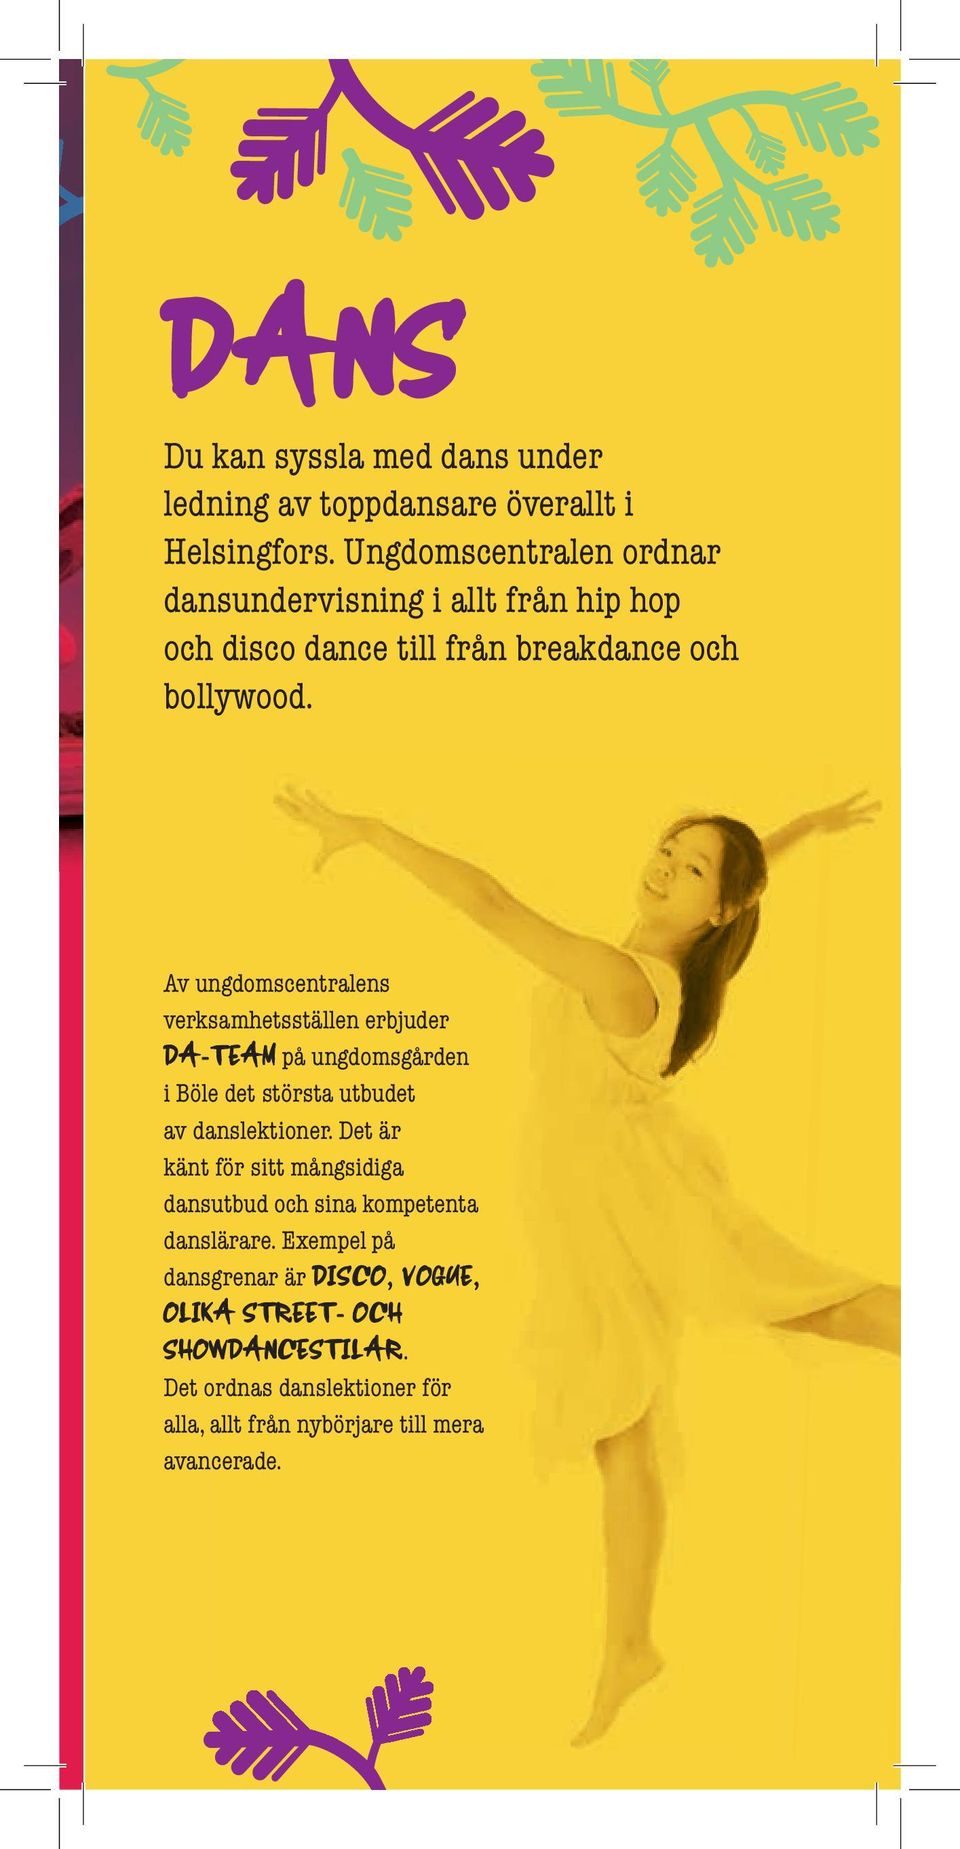 Av ungdomscentralens verksamhetsställen erbjuder DA-TEAM på ungdomsgården i Böle det största utbudet av danslektioner.